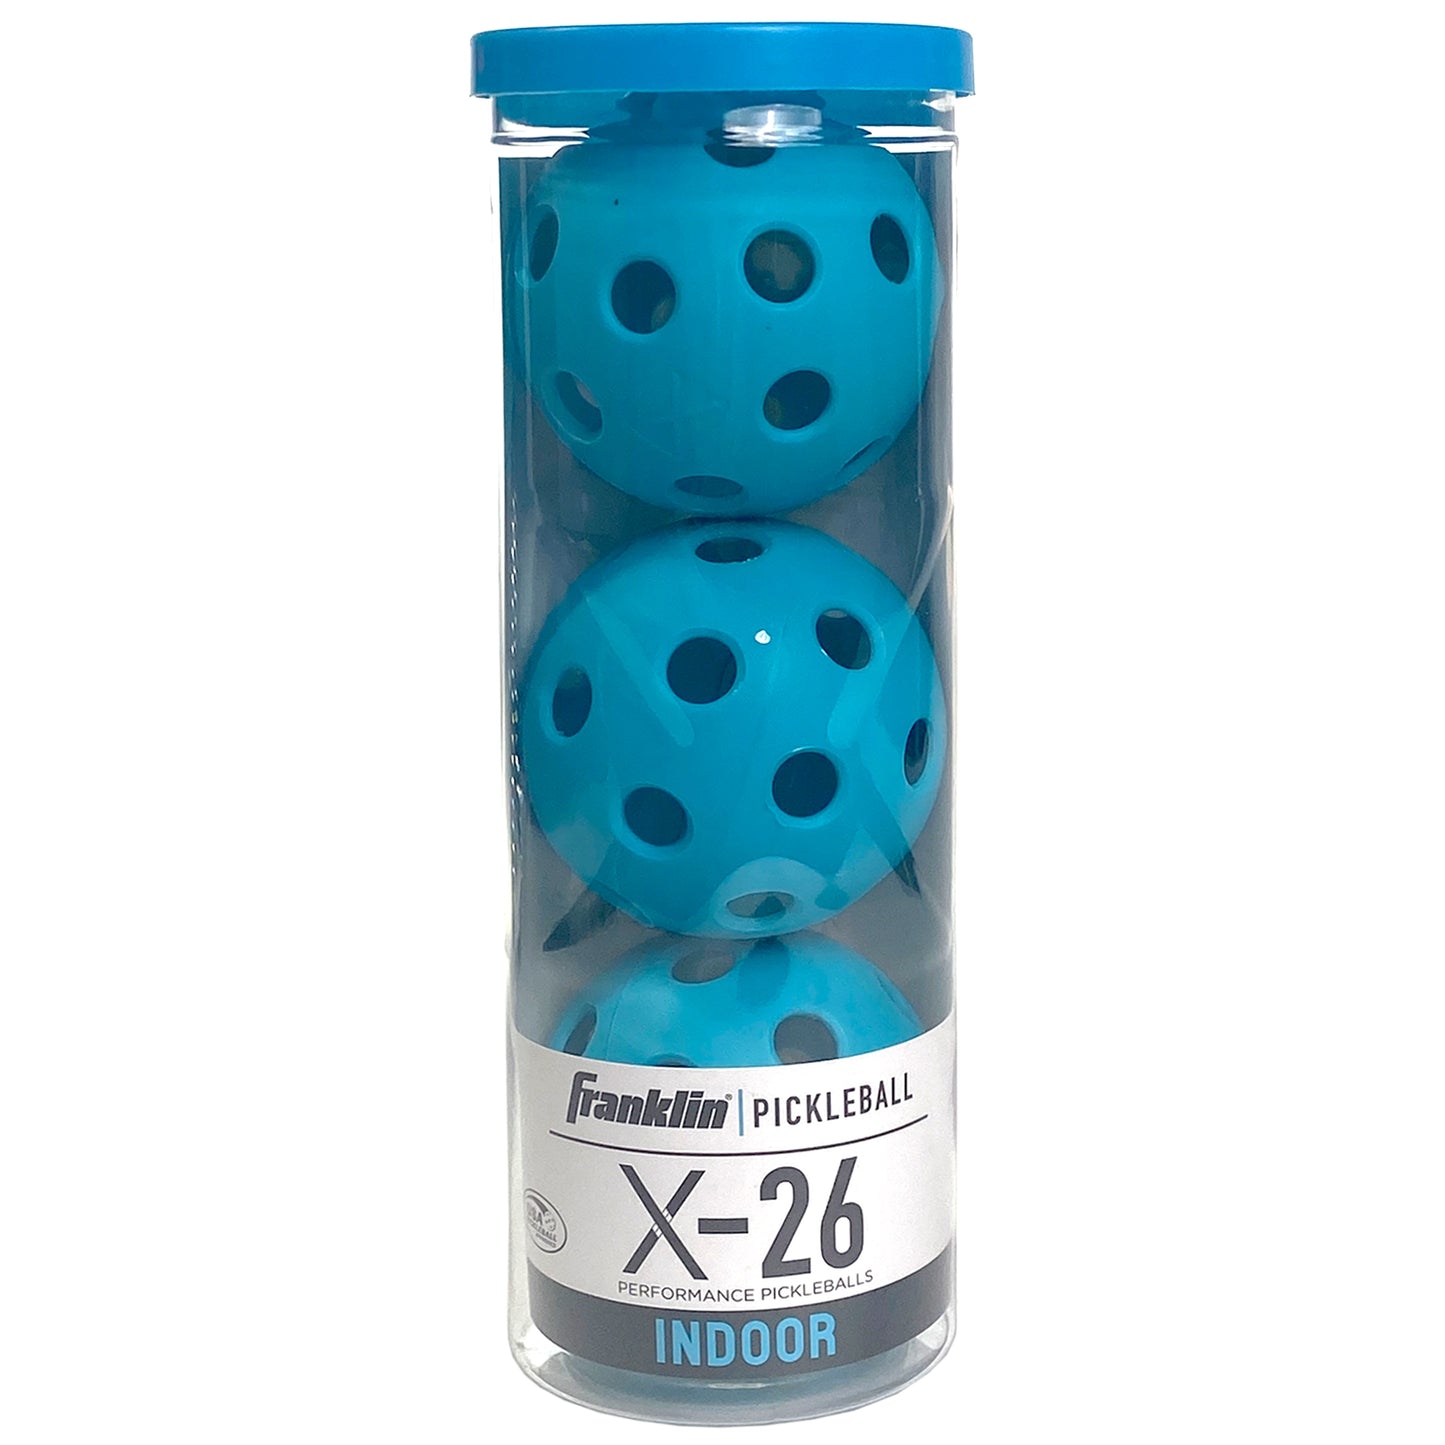 Franklin Pickleball X-26 Indoor (Pkg of 3) - Blue